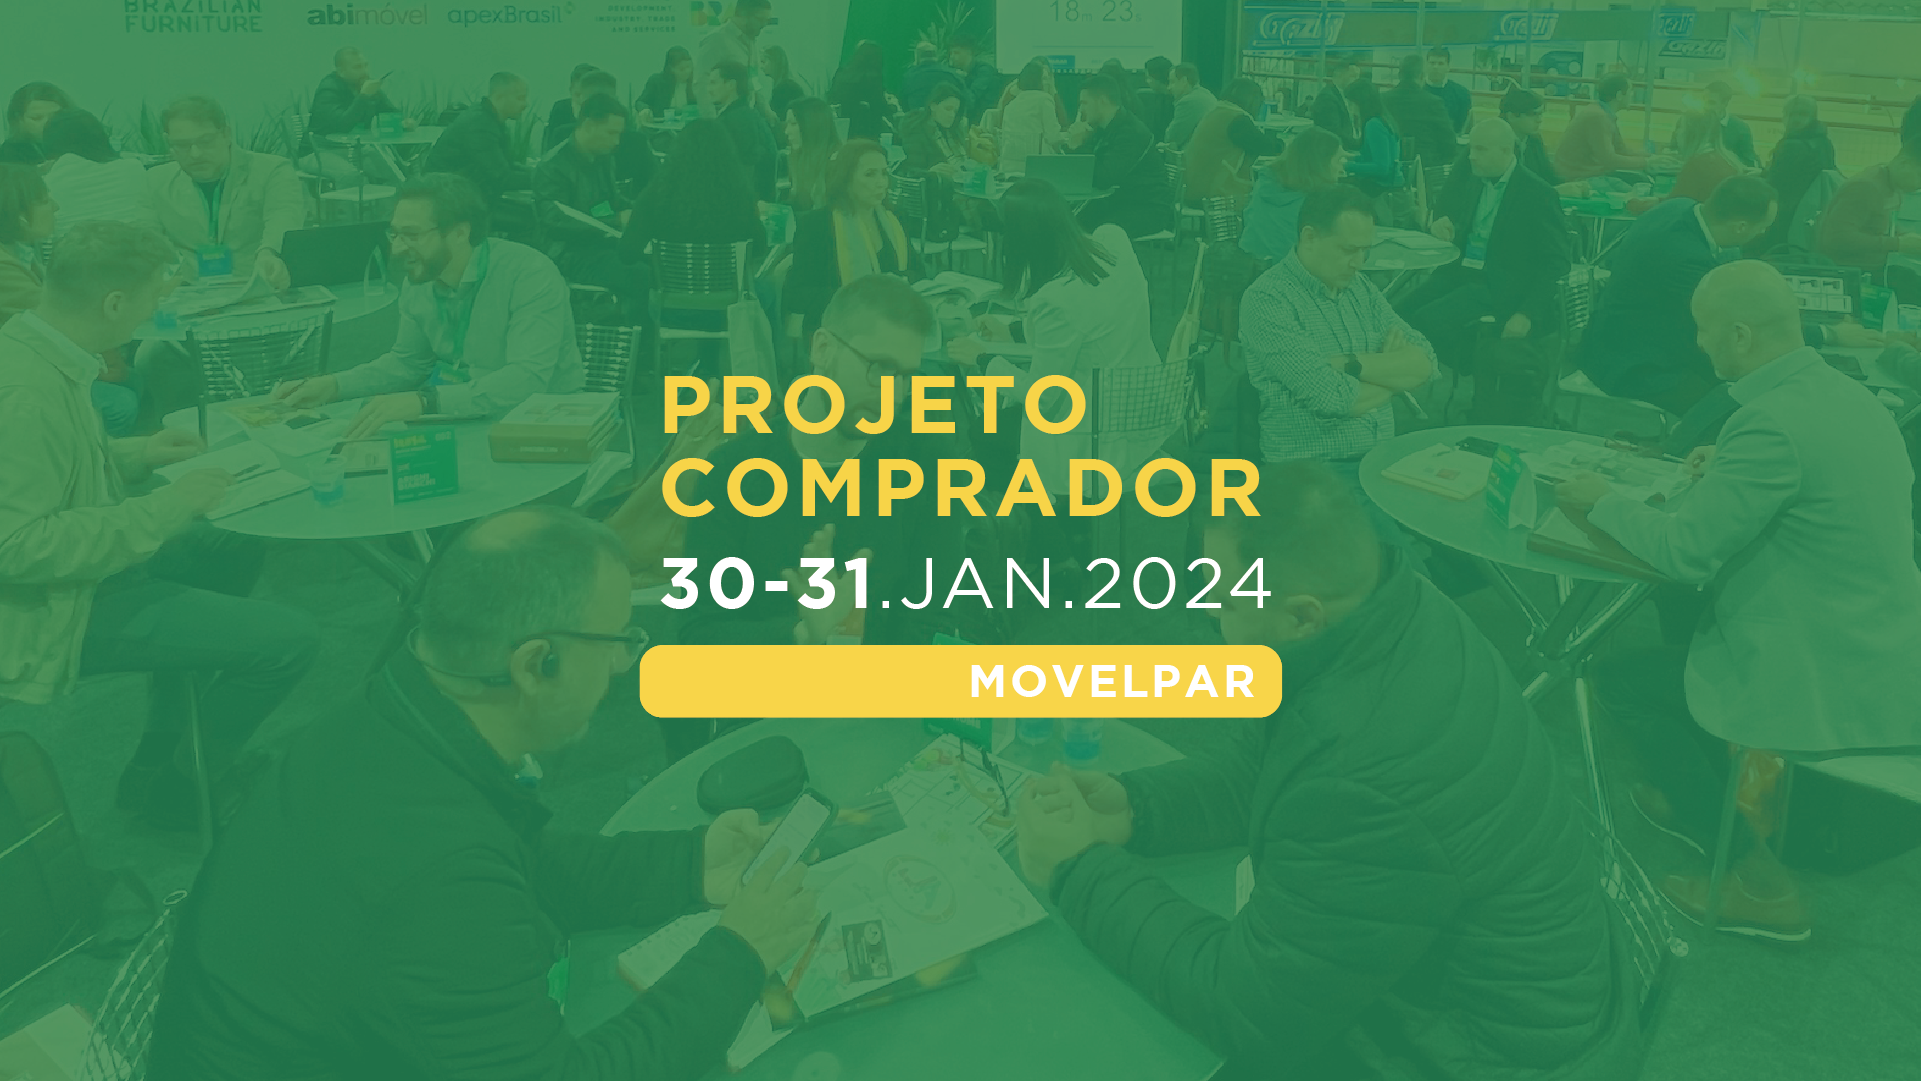 Brazilian Furniture promove Projeto Comprador na Movelpar Home Show 2024: evento ocorre no final de janeiro